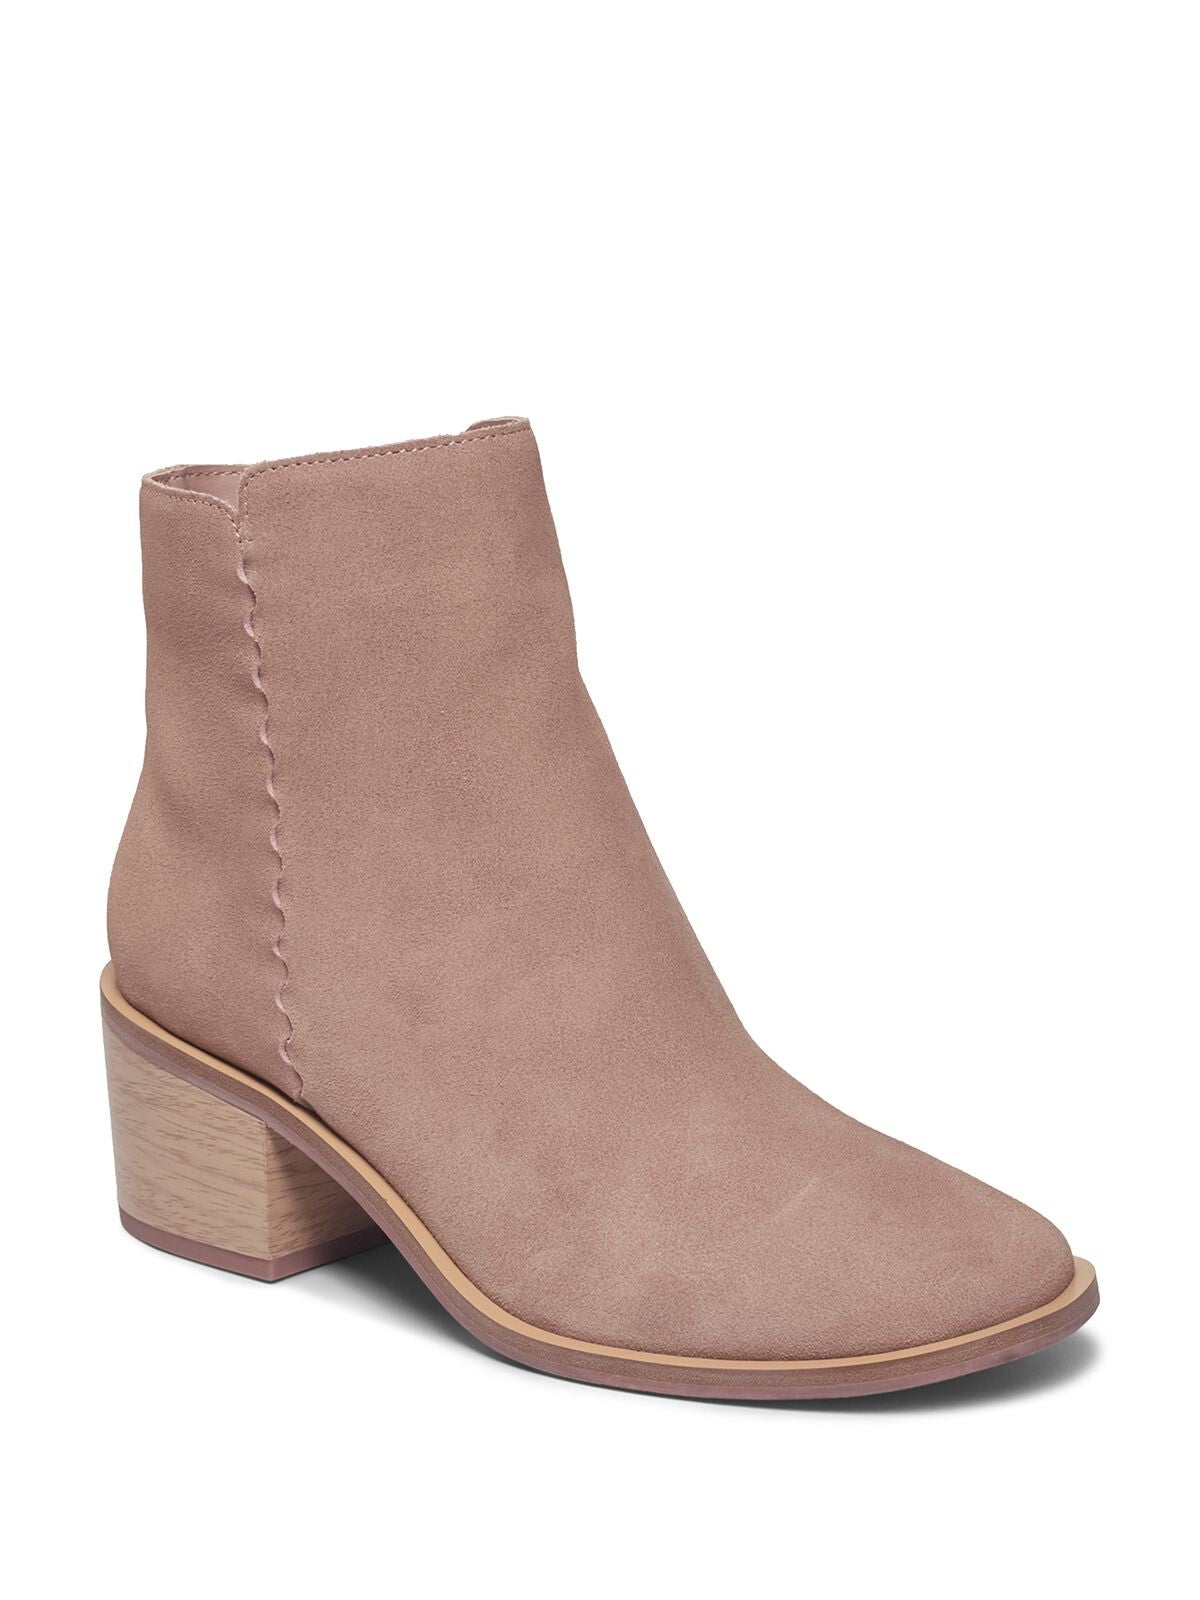 SPLENDID Womens Beige Comfort Avery Square Toe Block Heel Zip-Up Leather Booties 7.5 M